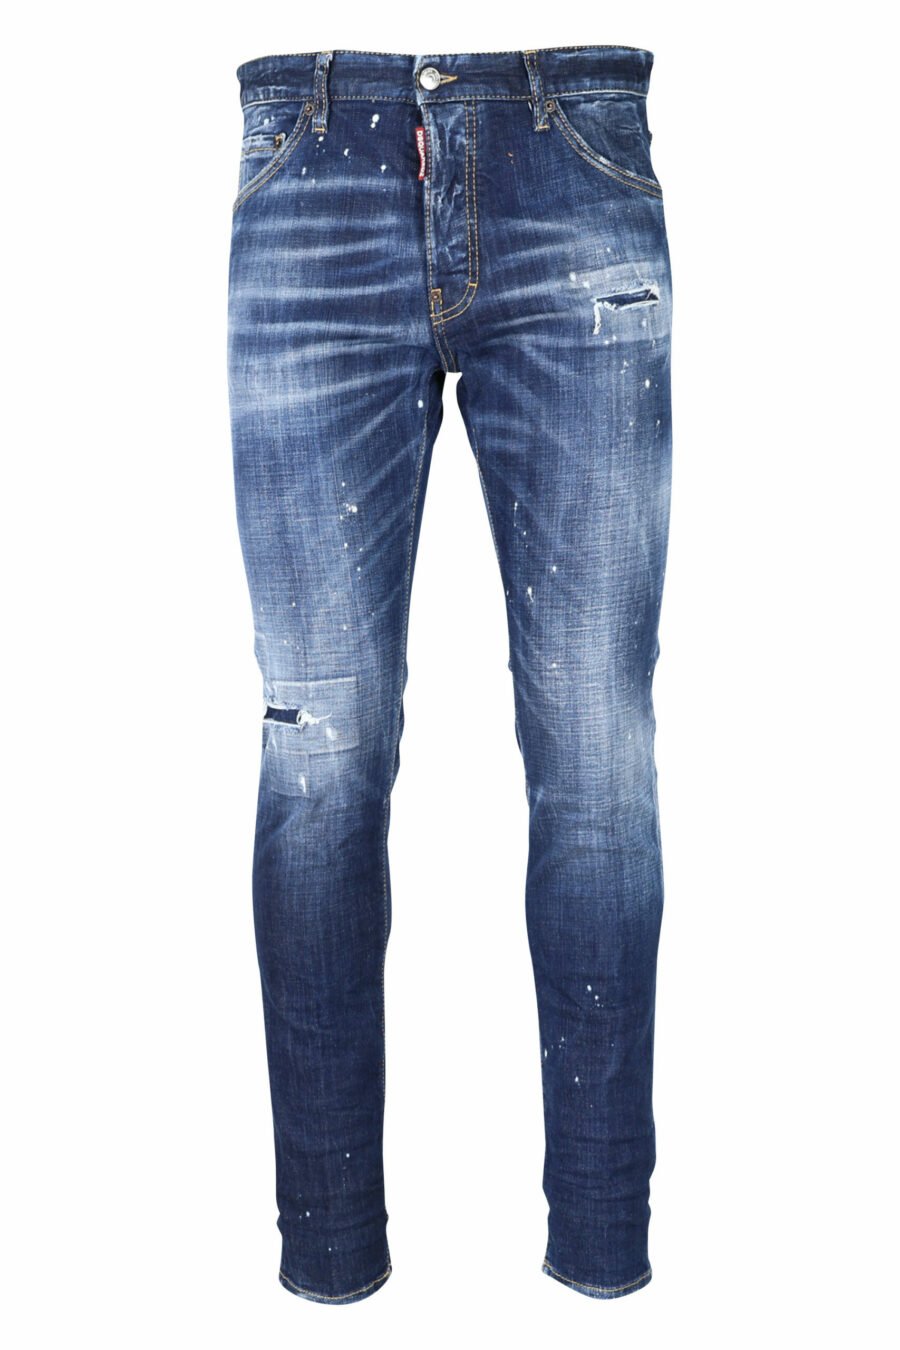 Pantalón vaquero "cool guy jean" azul con pintura y desgastado - 8054148101688 scaled